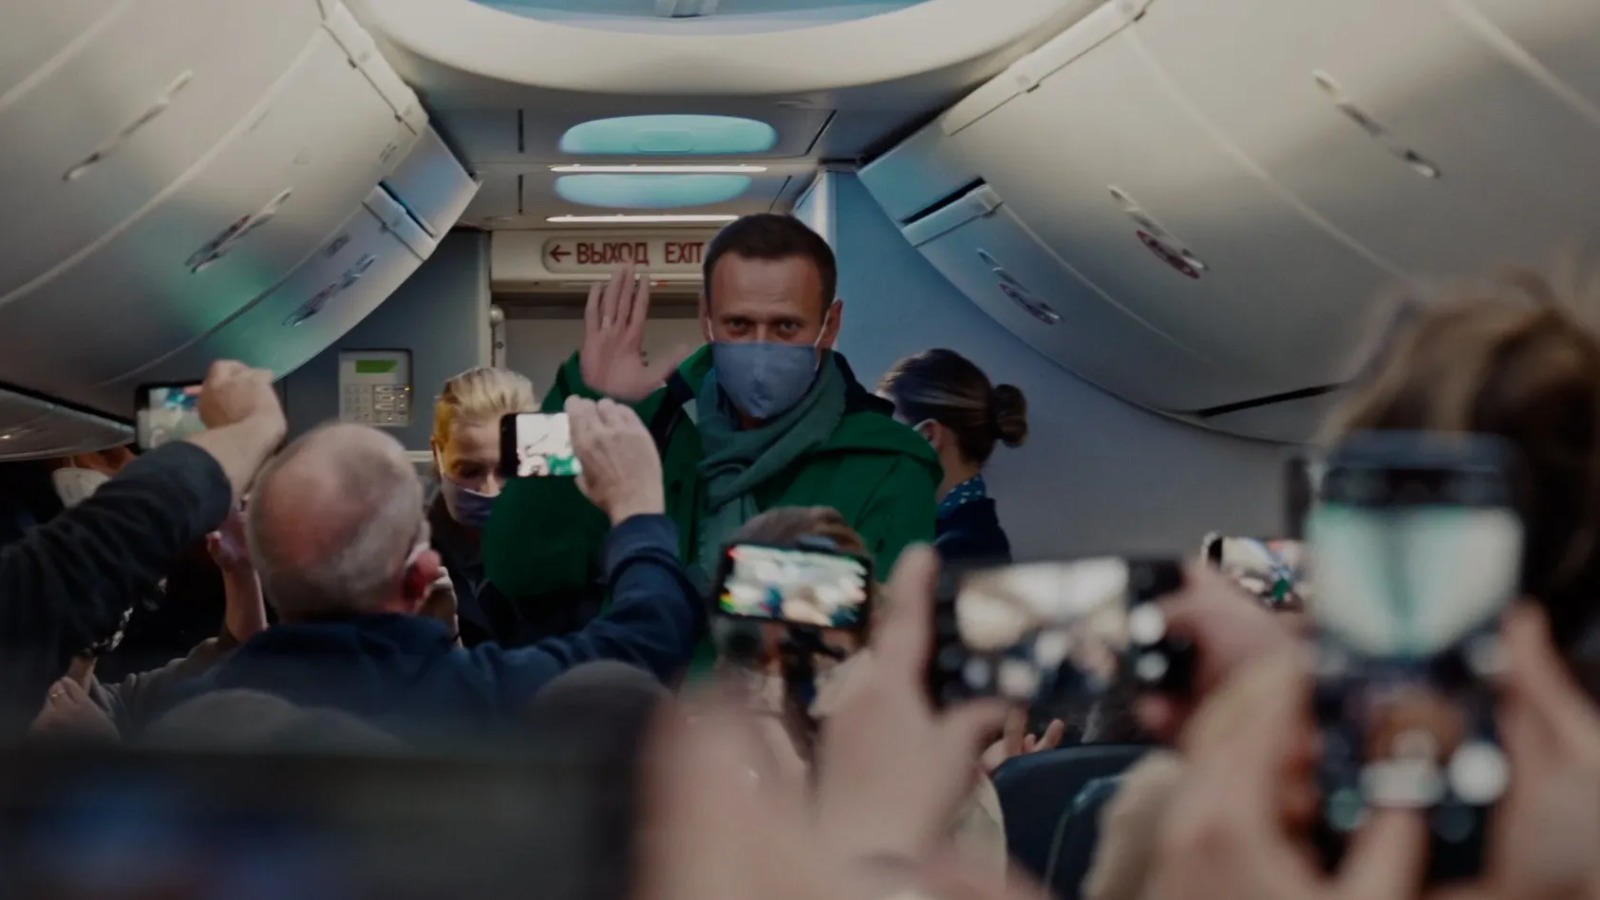 Cena do documentário Navalny. Na cena, vemos, ao fundo, Alexey Navalny, um homem branco, aparentando ter cerca de 40 anos, de cabelos castanhos curtos, usando máscara, cachecol e um casaco verde com a mão direita em um aceno, em um avião. A frente dele, vemos pessoas de costas com celulares filmando em sua direção.